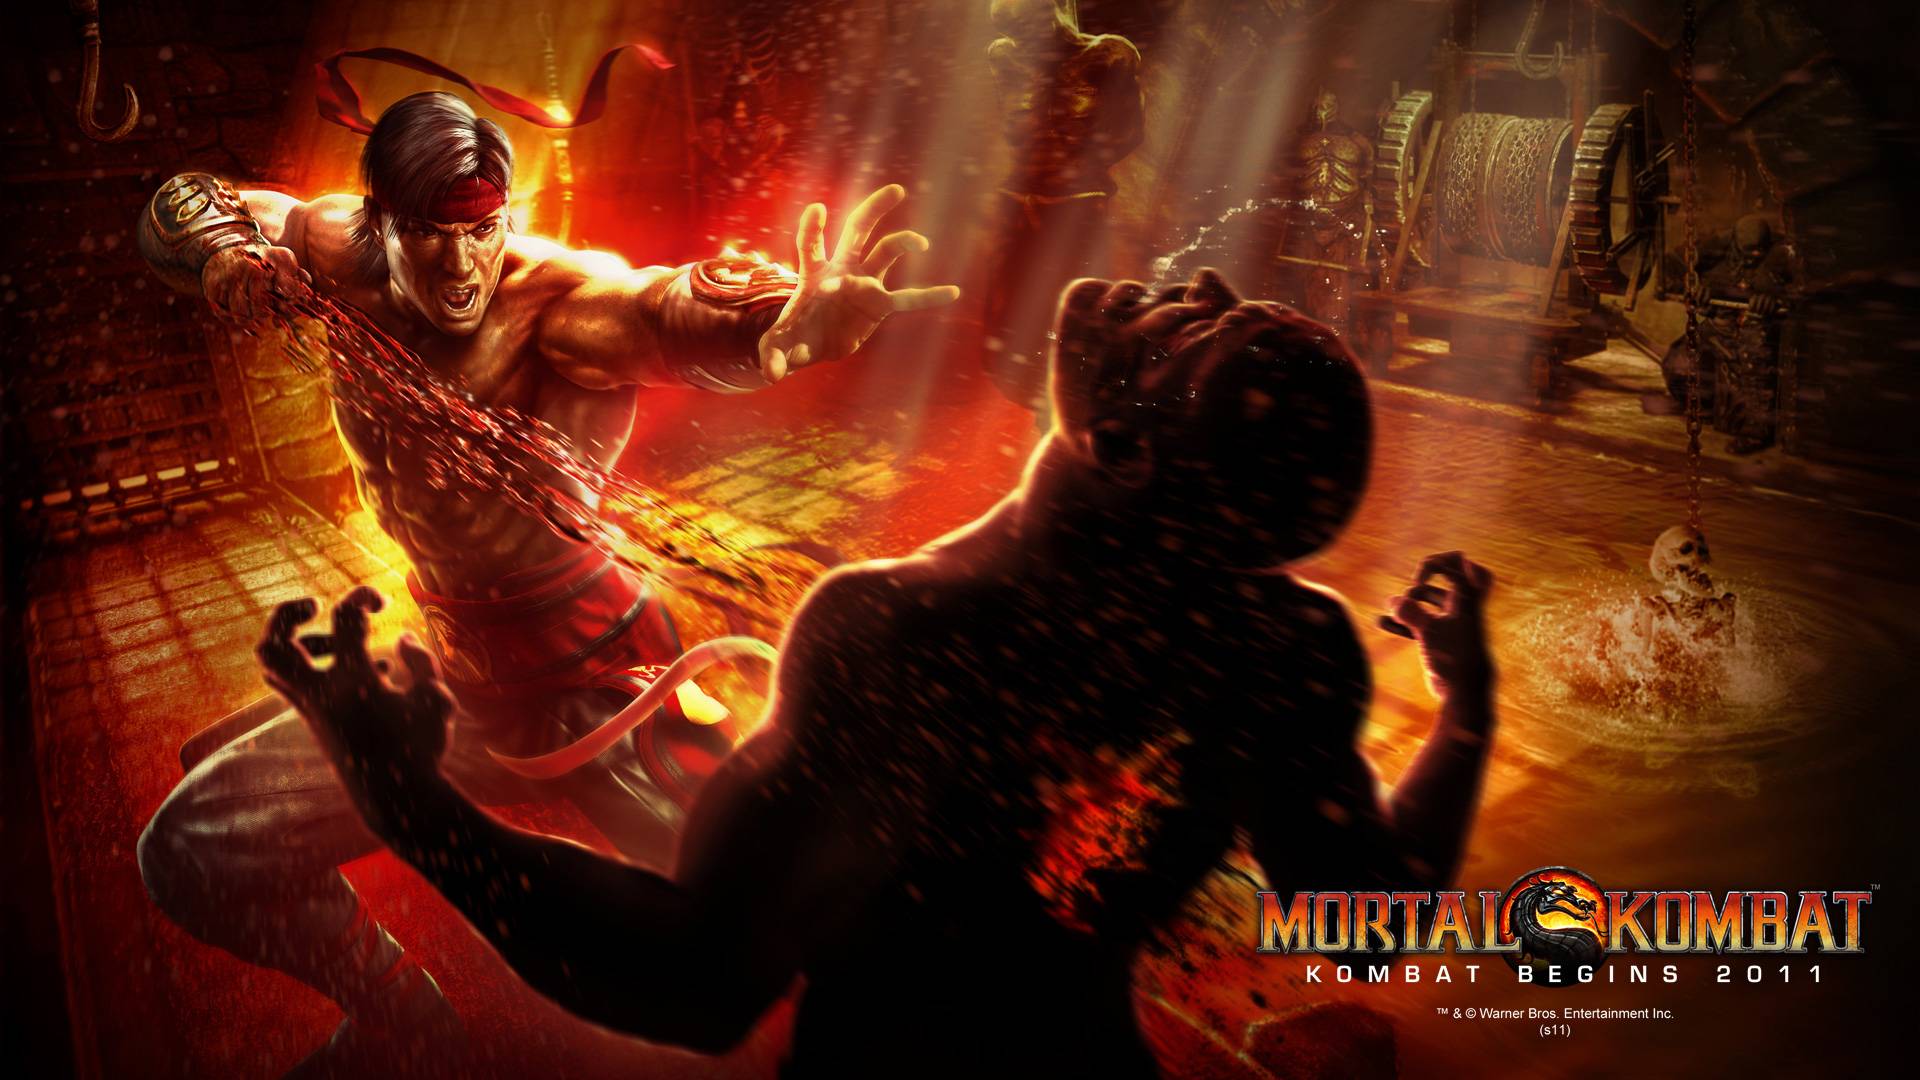 Mortal Kombat Wallpaper in full 1080P HD « Video Game News, Reviews